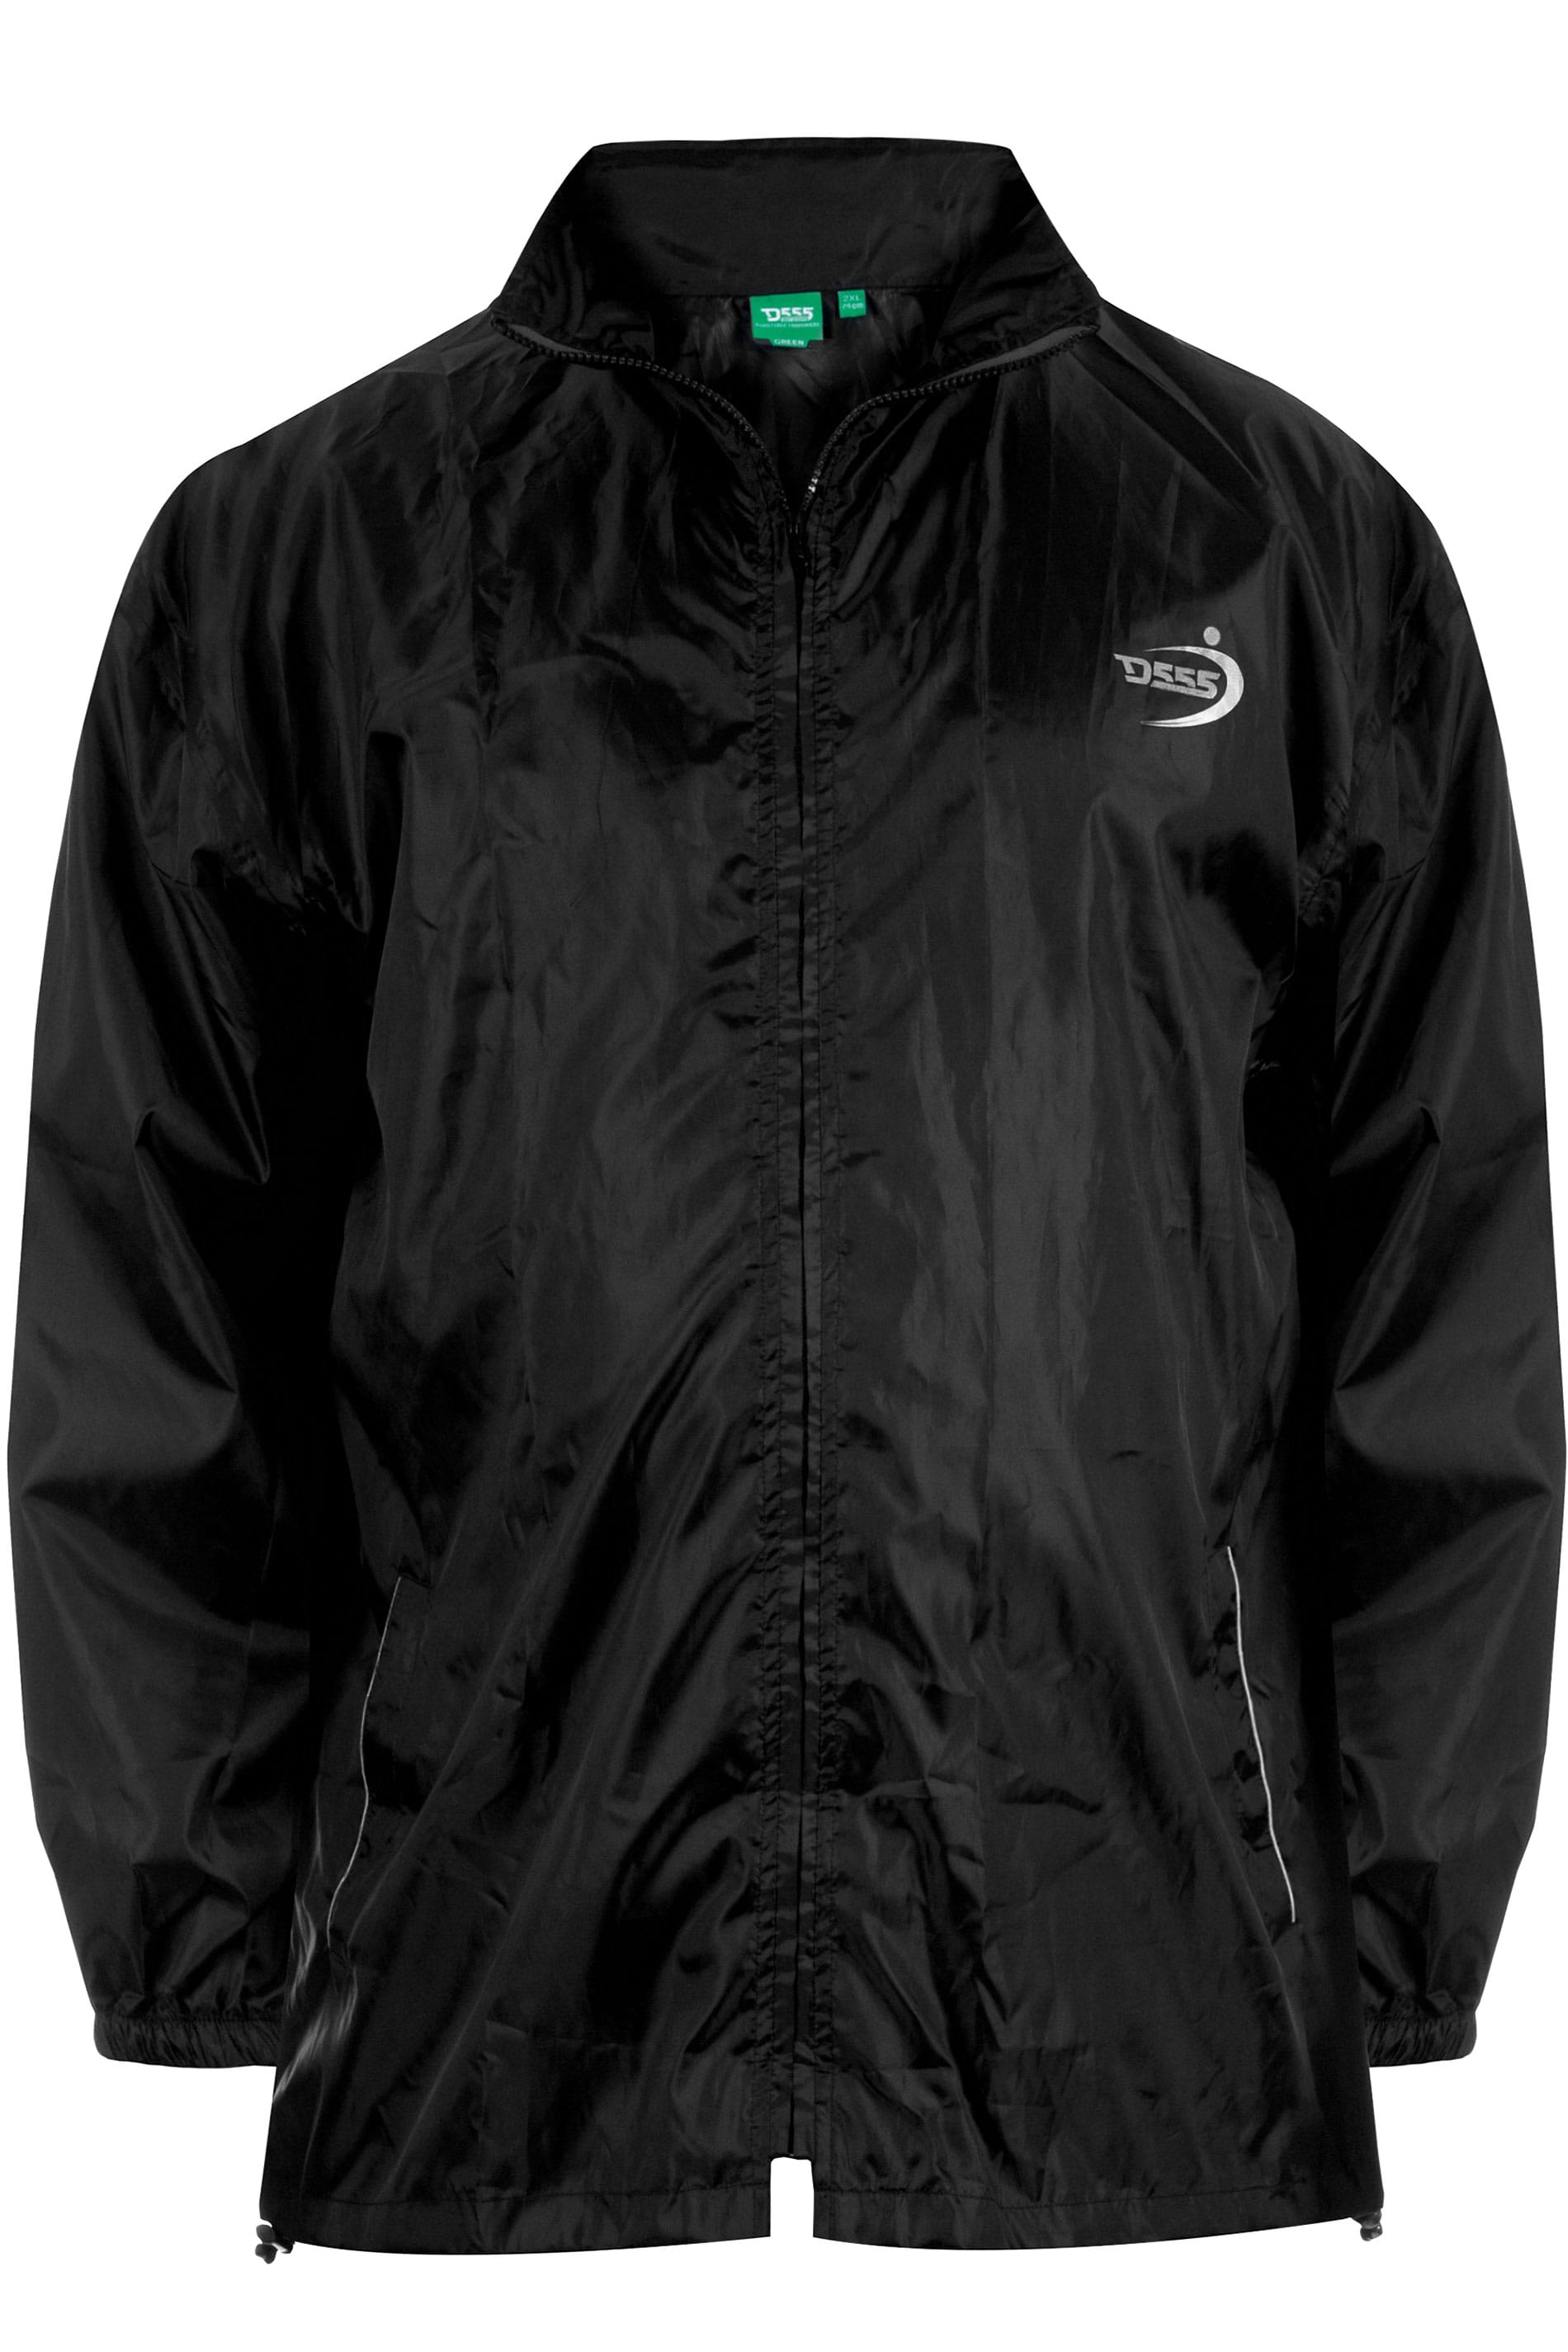 D555 Black Foldaway Waterproof Jacket | BadRhino 1